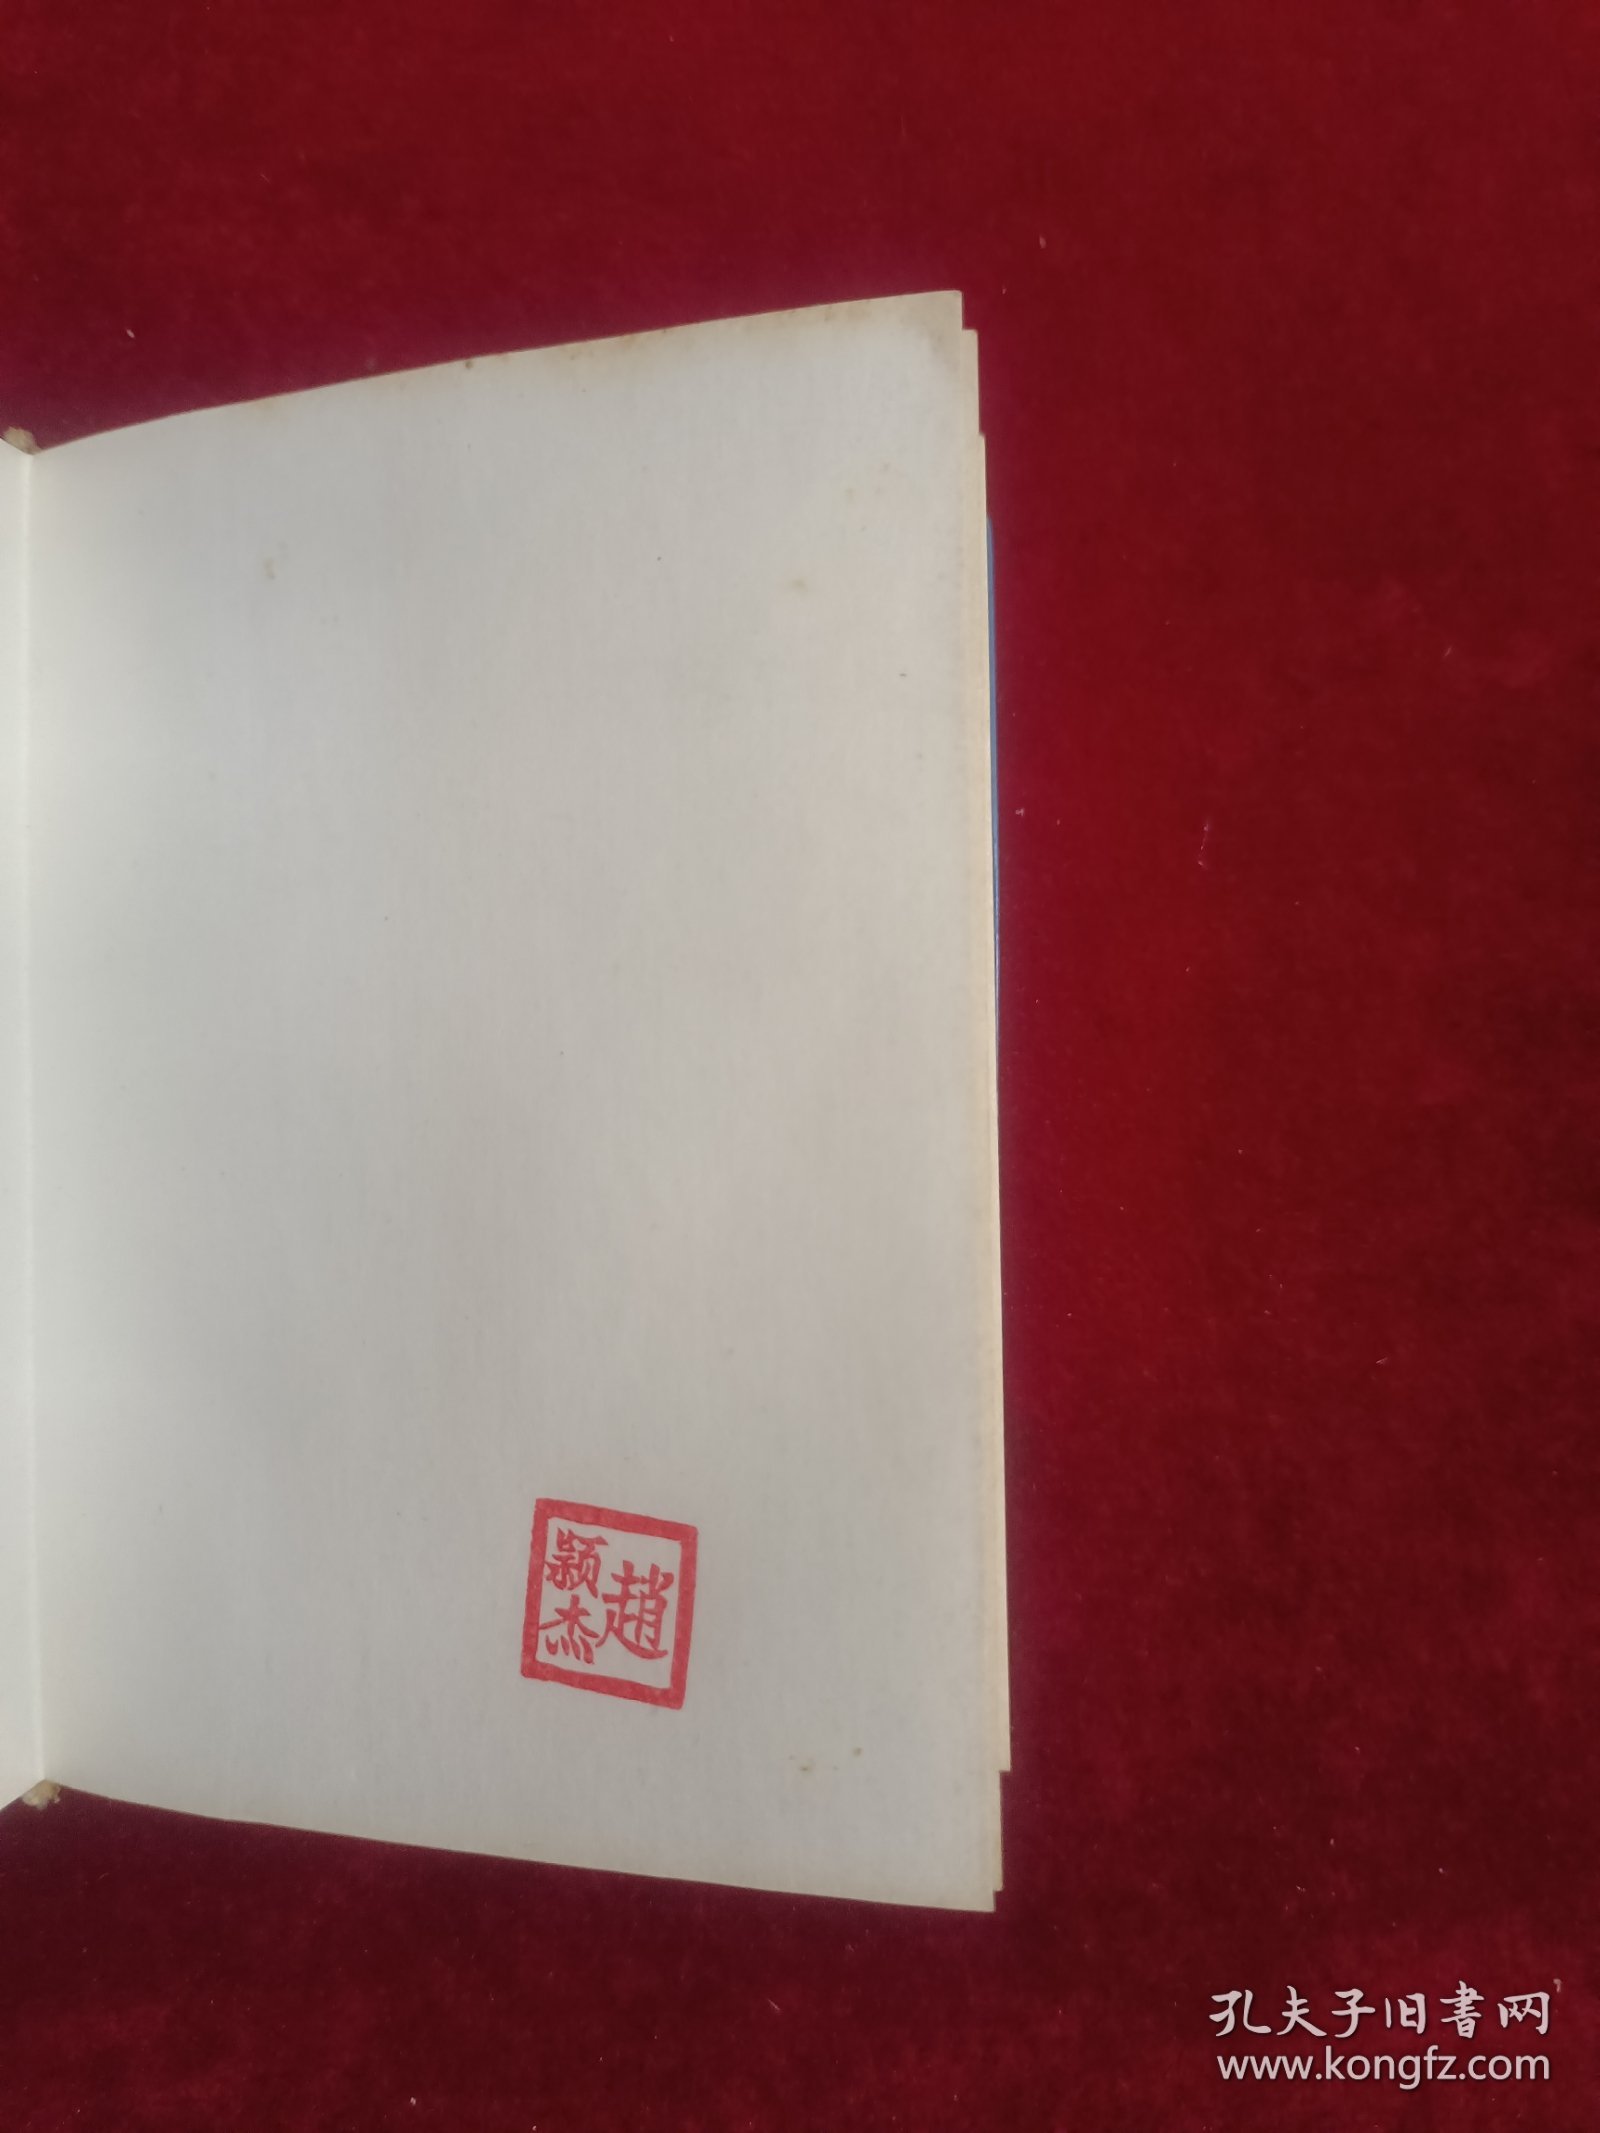 汉语谚语小辞典(塑料封皮)